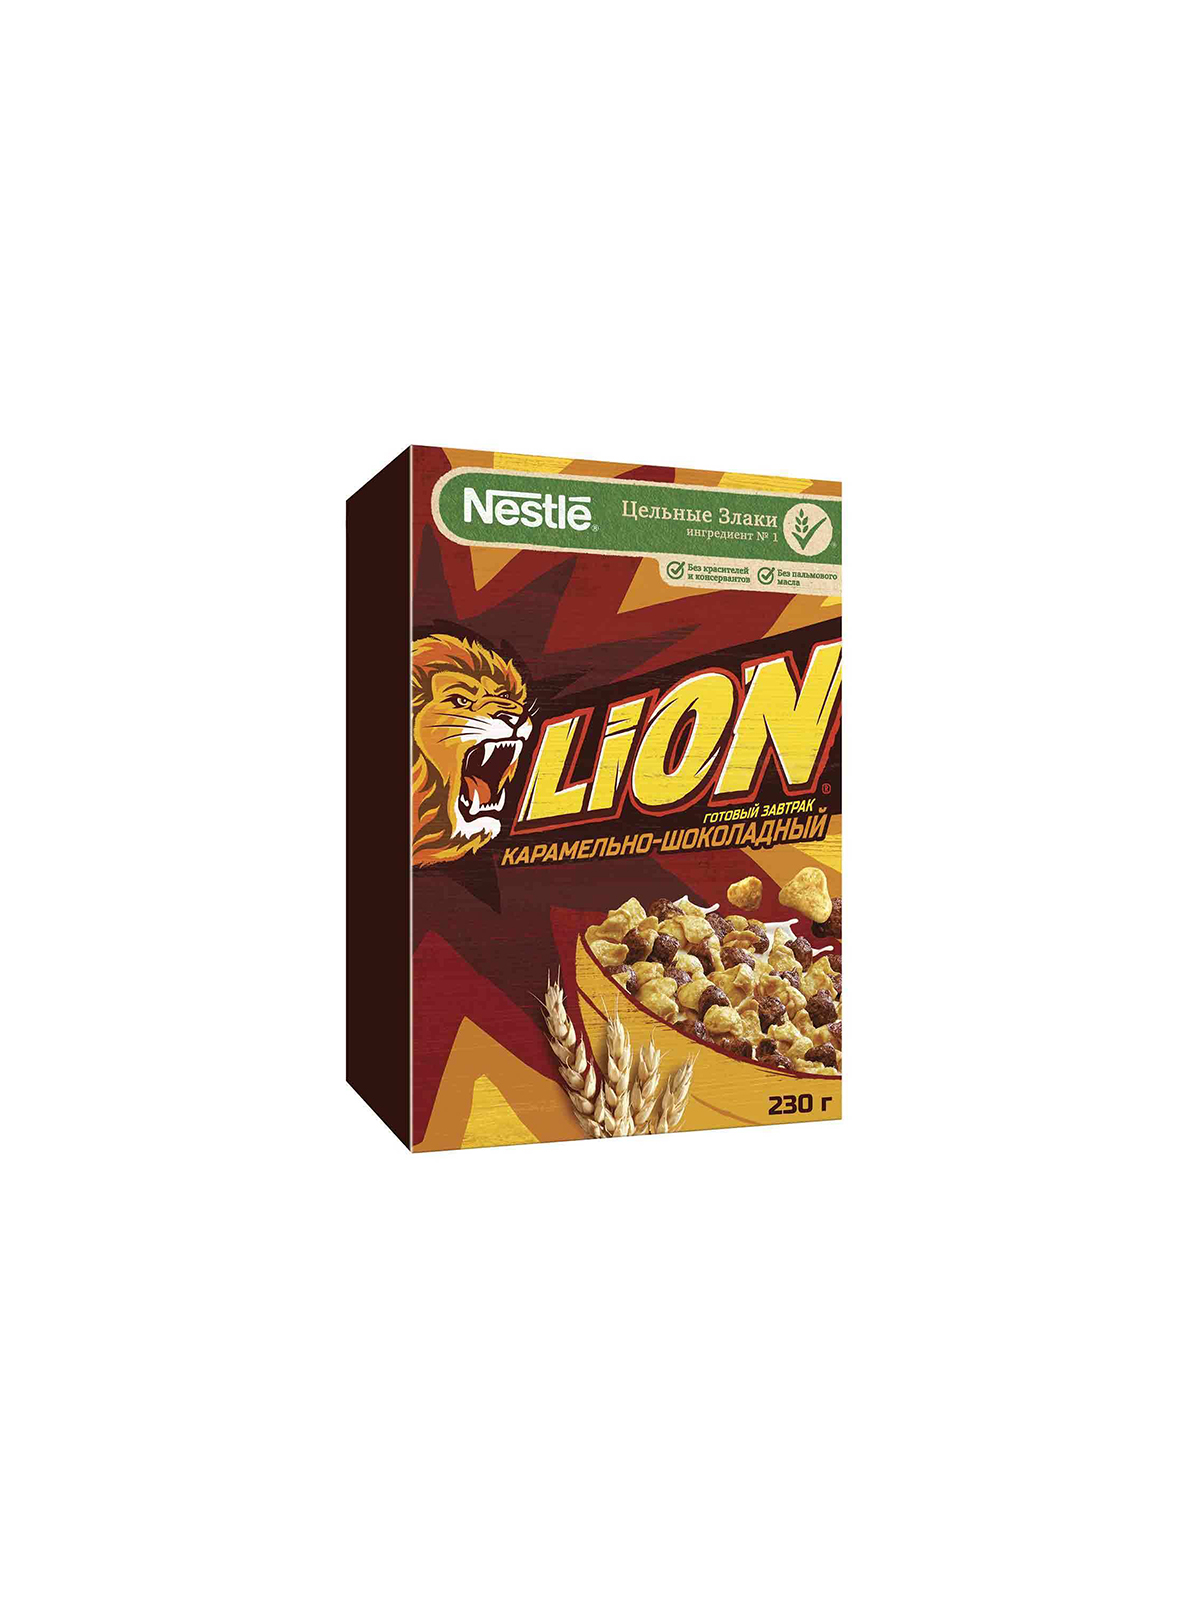 Lion Готовый завтрак 230г